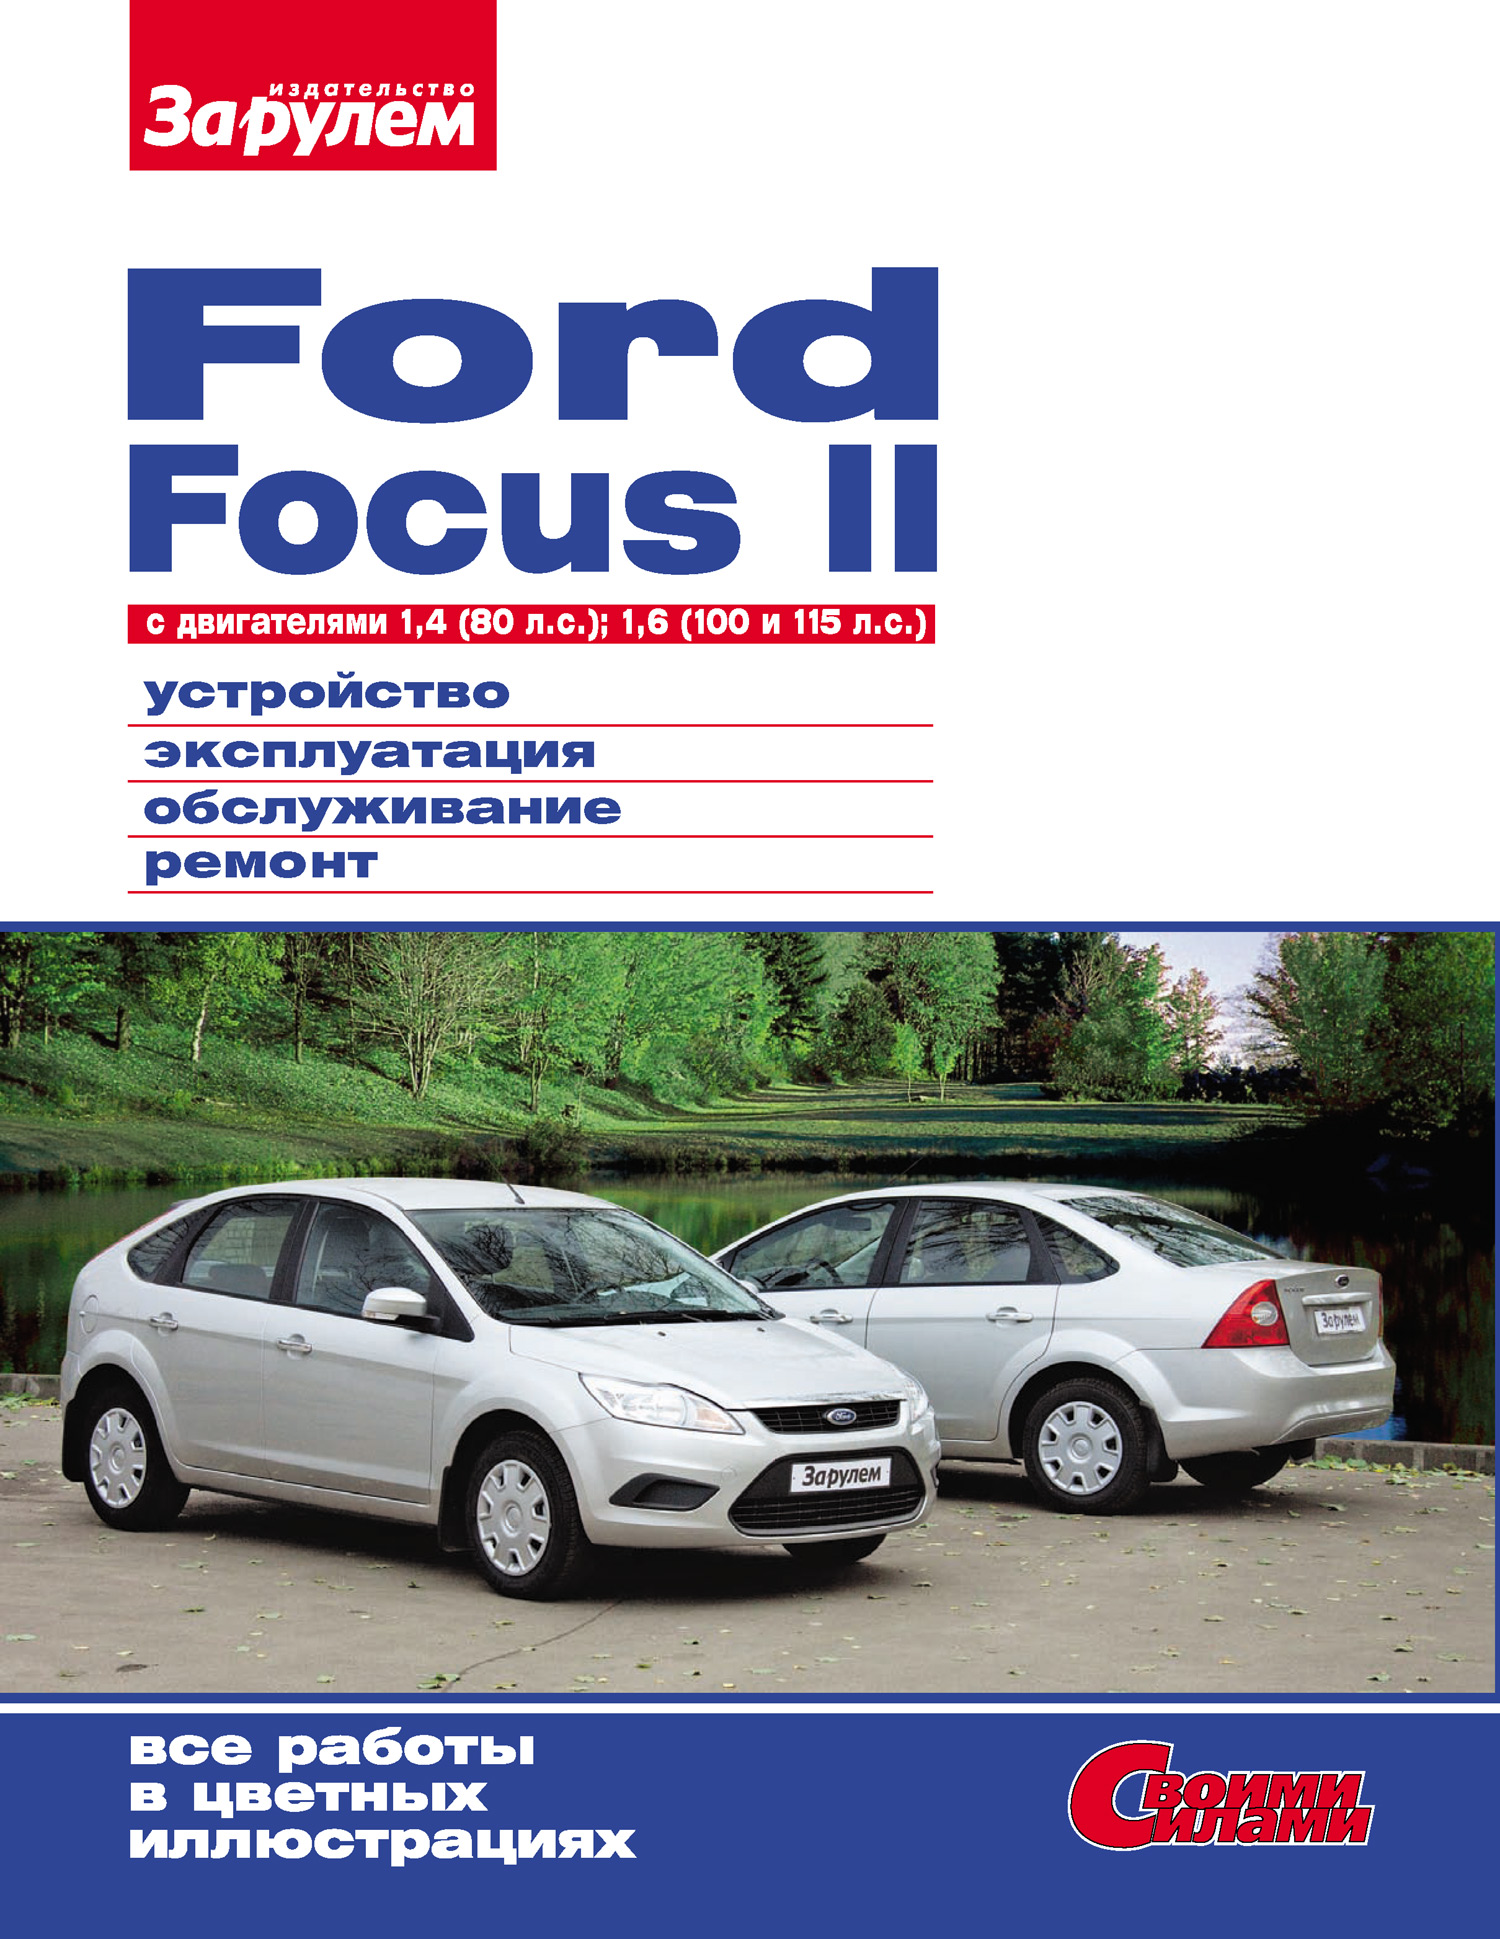 Ford Focus II cдвигателями 1,4 (80 л.с.); 1,6 (100 и 115 л.с.) Устройство, эксплуатация, обслуживание, ремонт: Иллюстрированное руководство